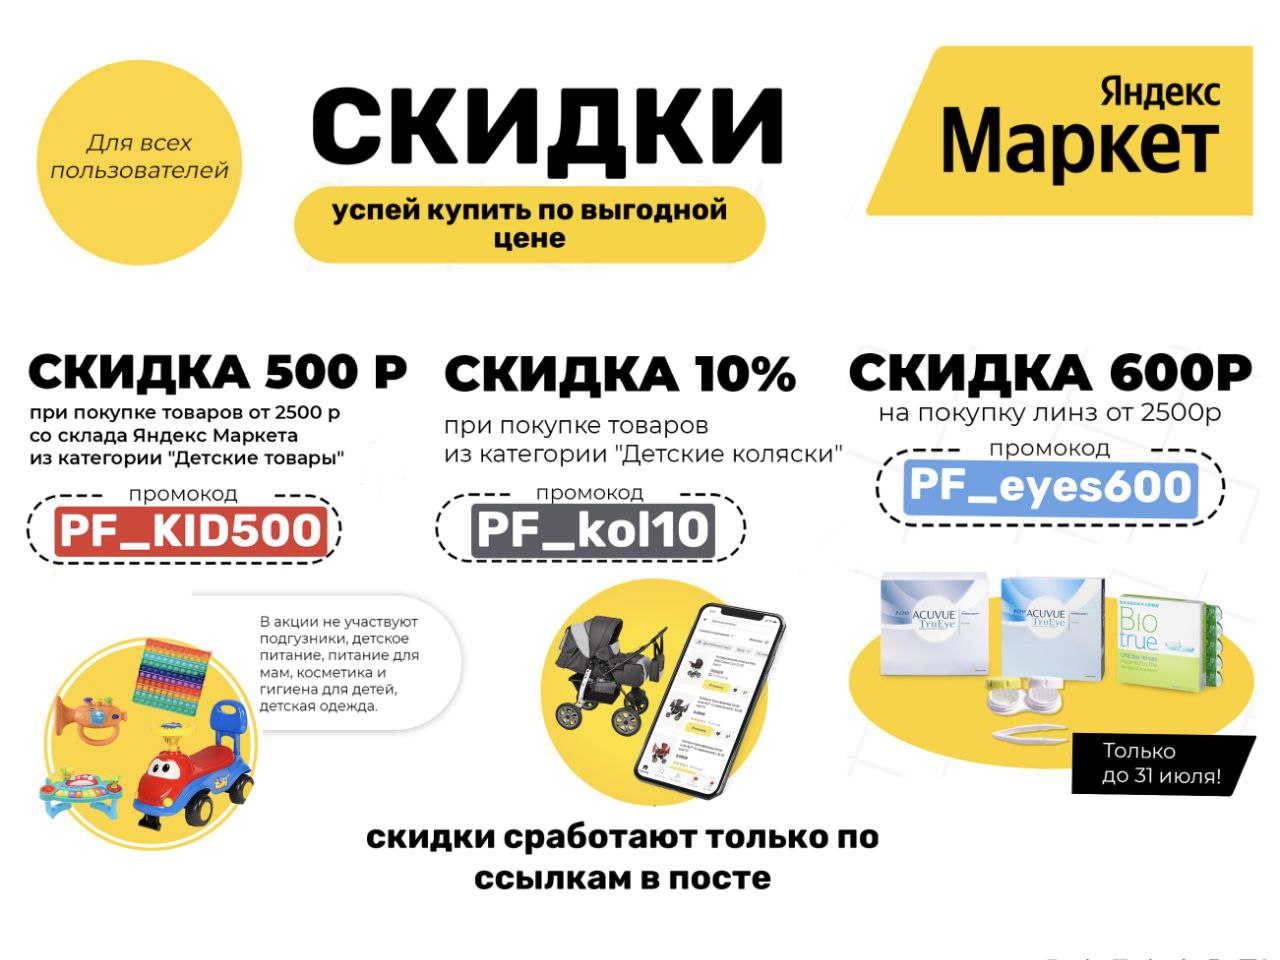 Скидки Яндекс Маркета